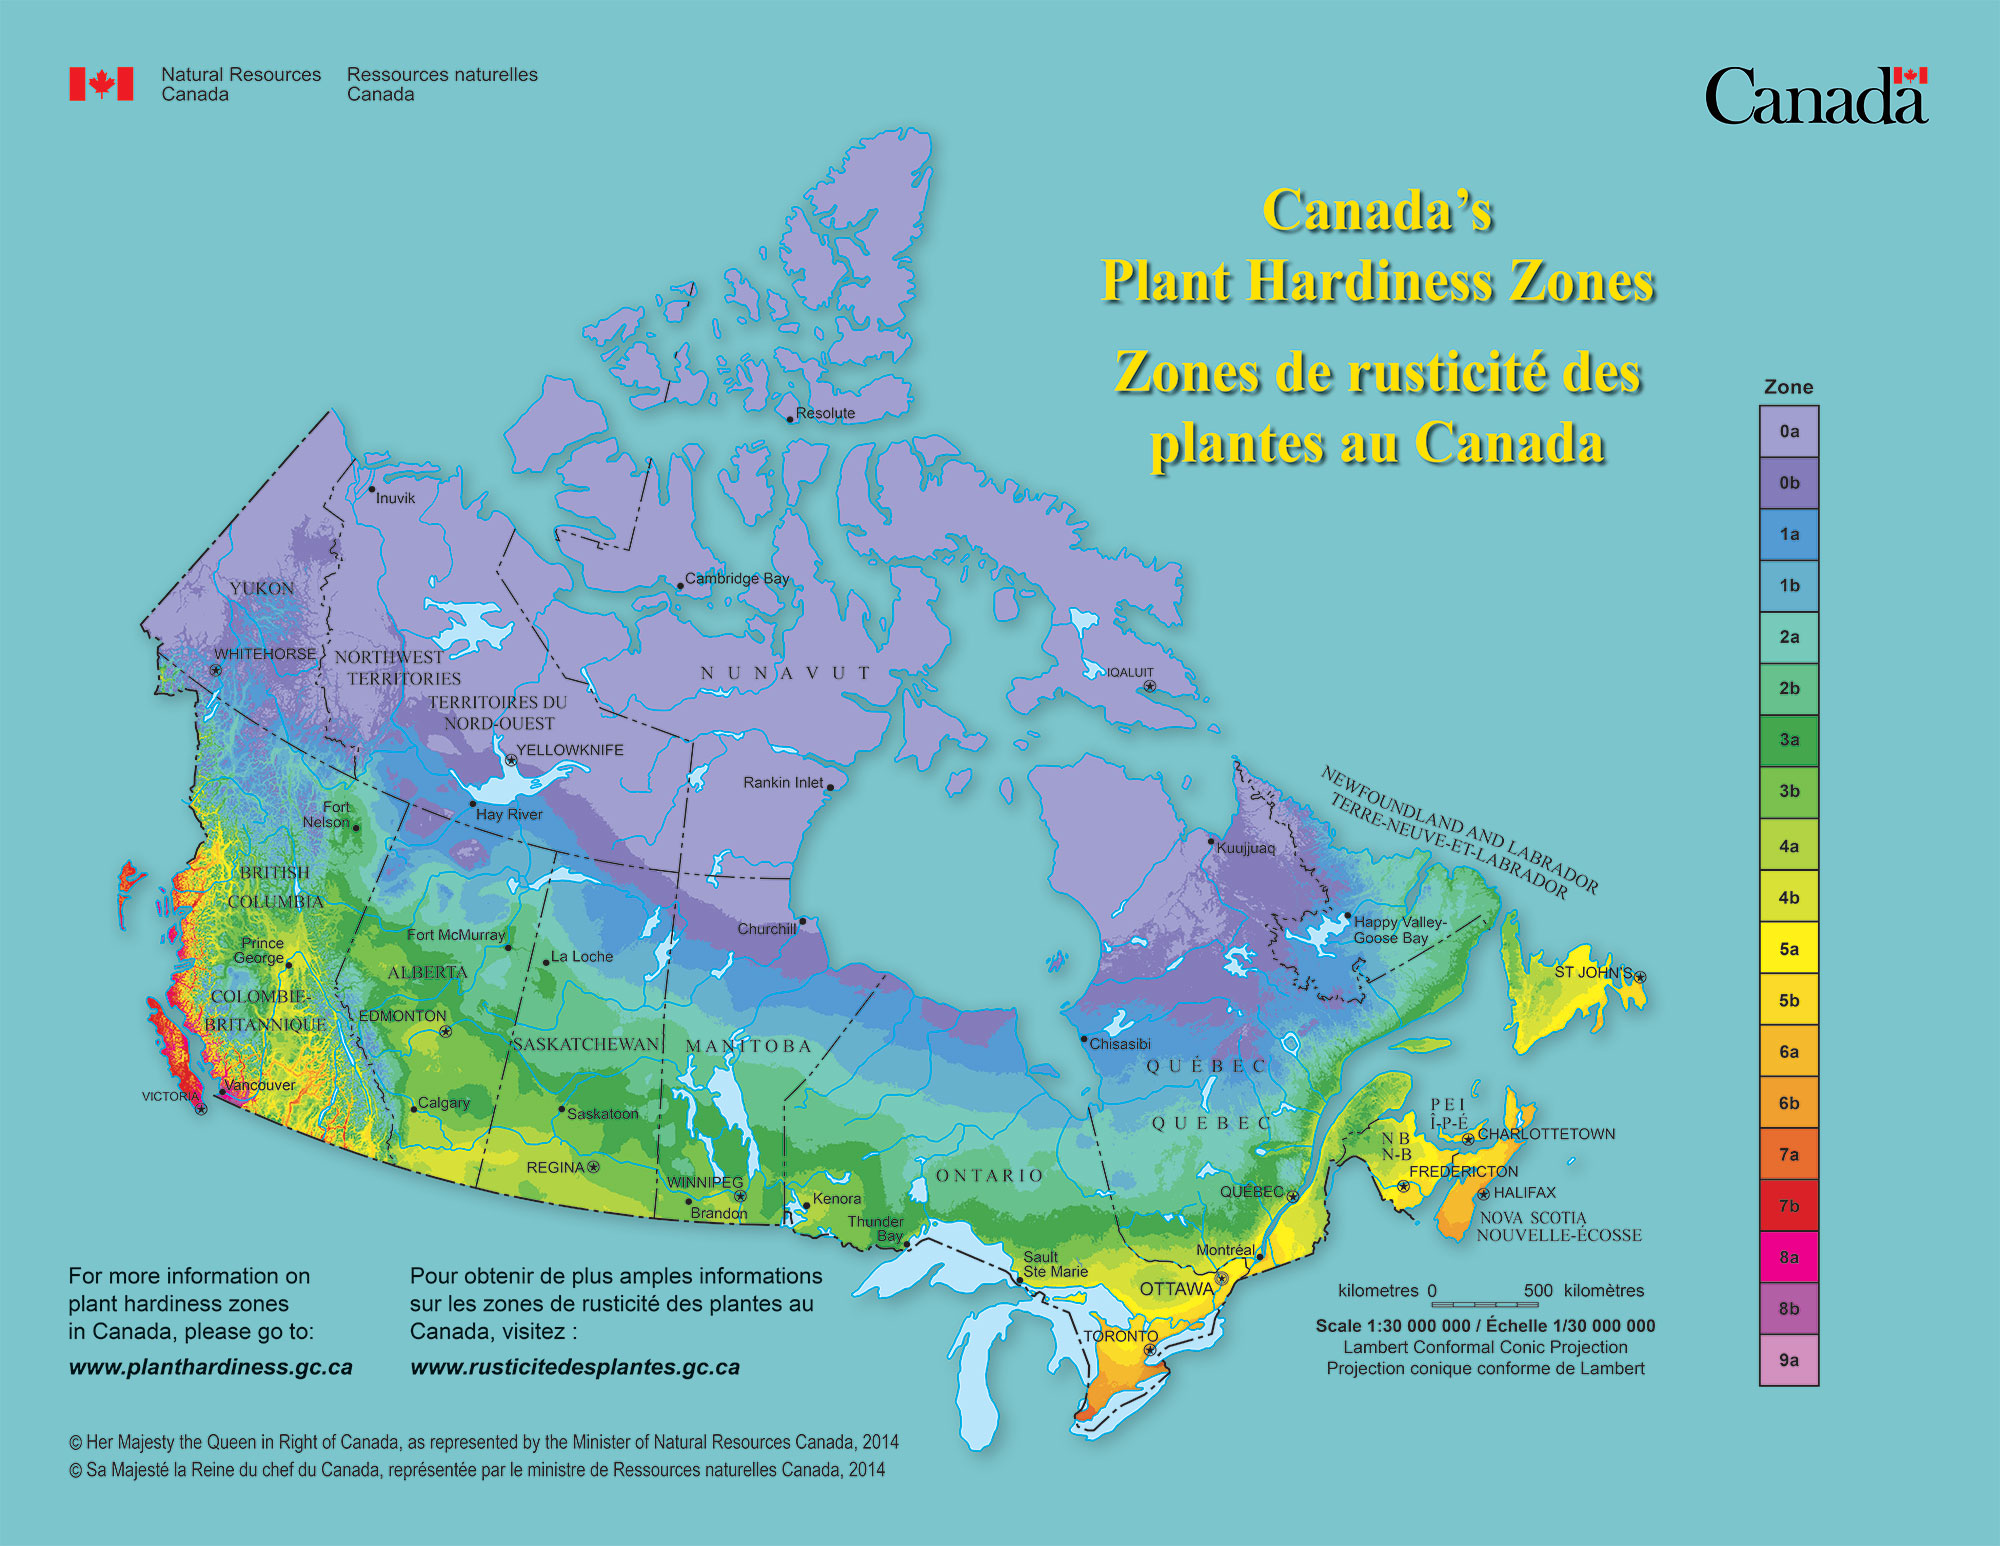 Zones de rusticité des plantes au Canada